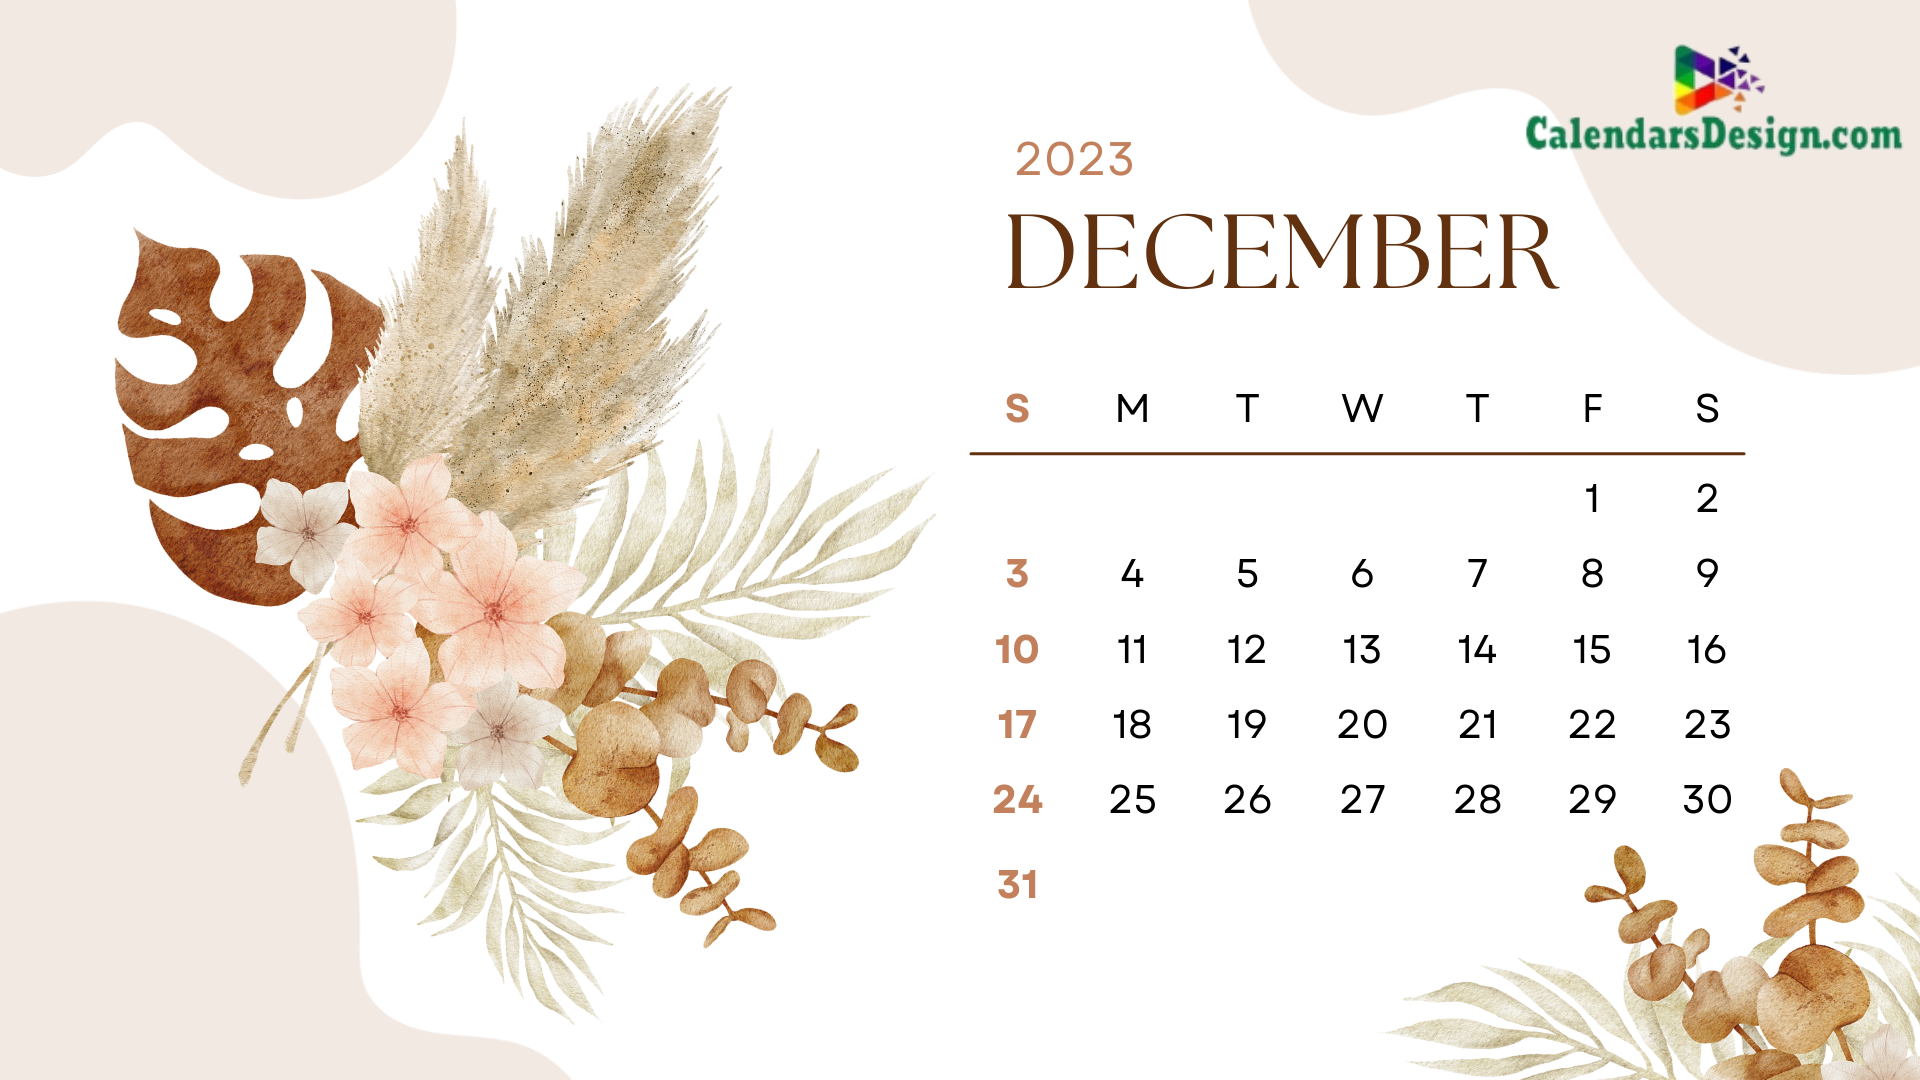 Latest December 2023 Wall Calendar